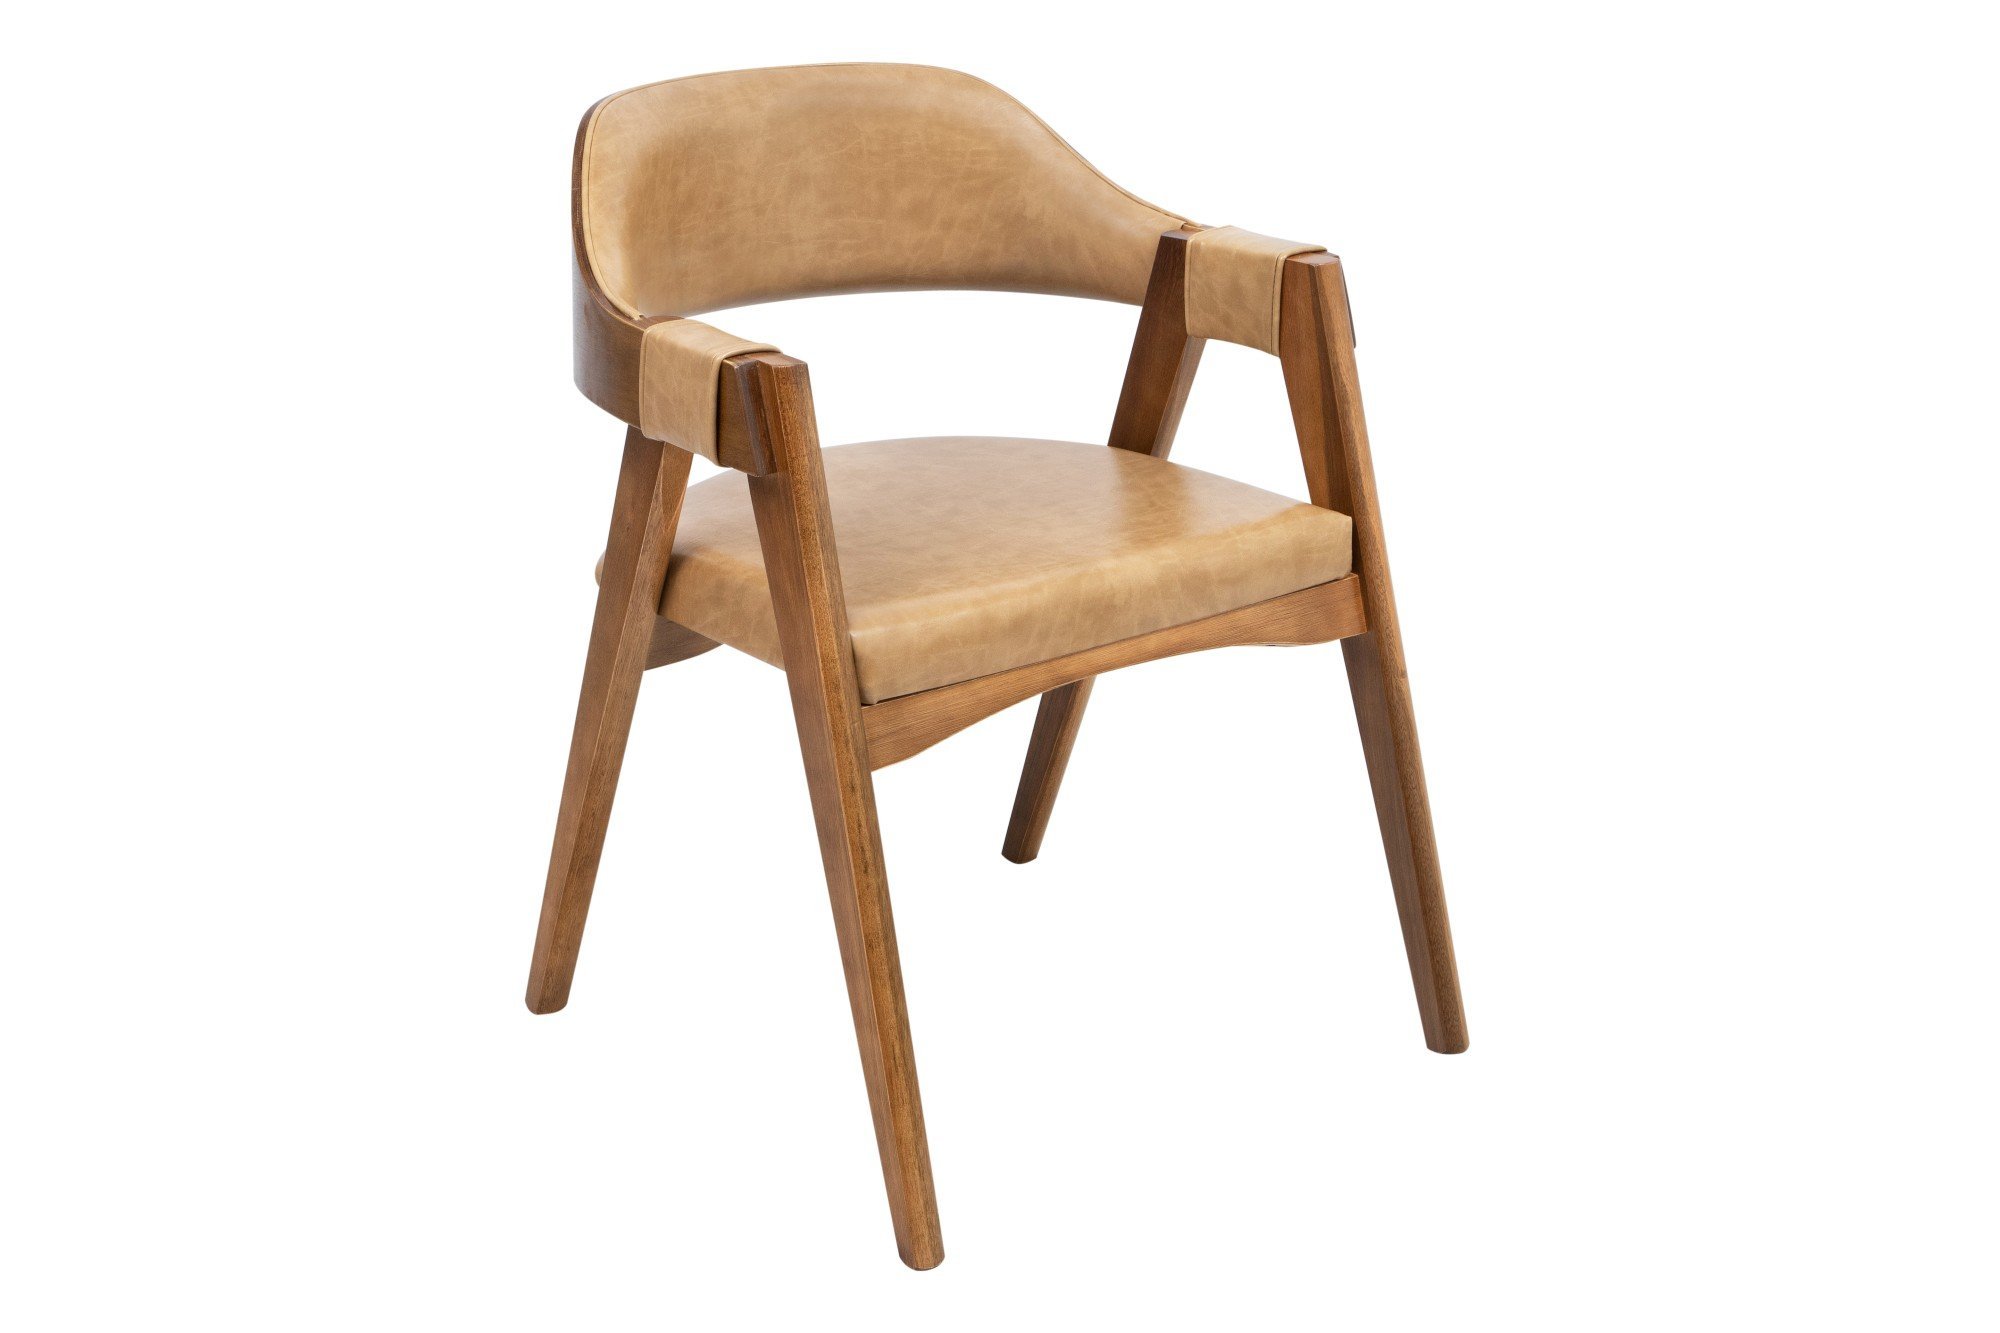 Cadeira Versalhes Madeira Cor Pinhão Estofada Moderna Tecido:Couro Ecológico Durango Kaki:Couro Ecol